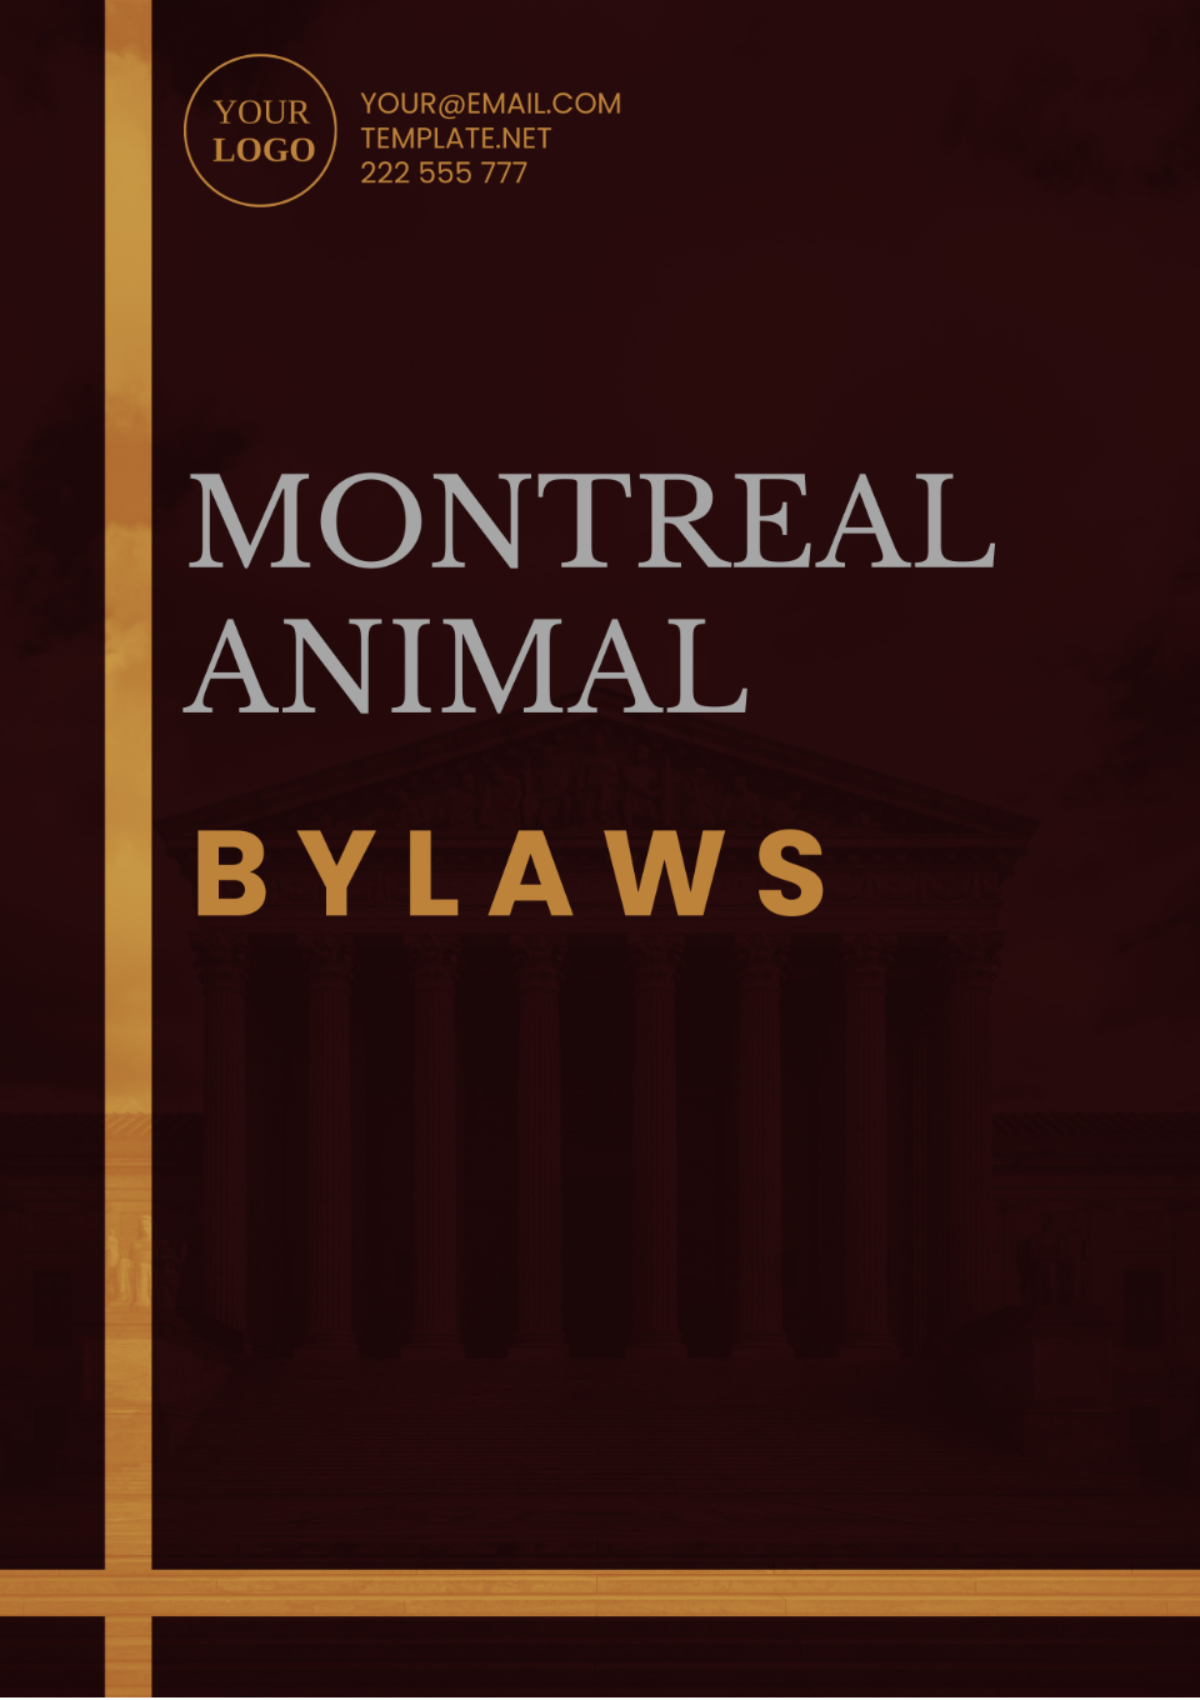 Montreal Animal Bylaws Template